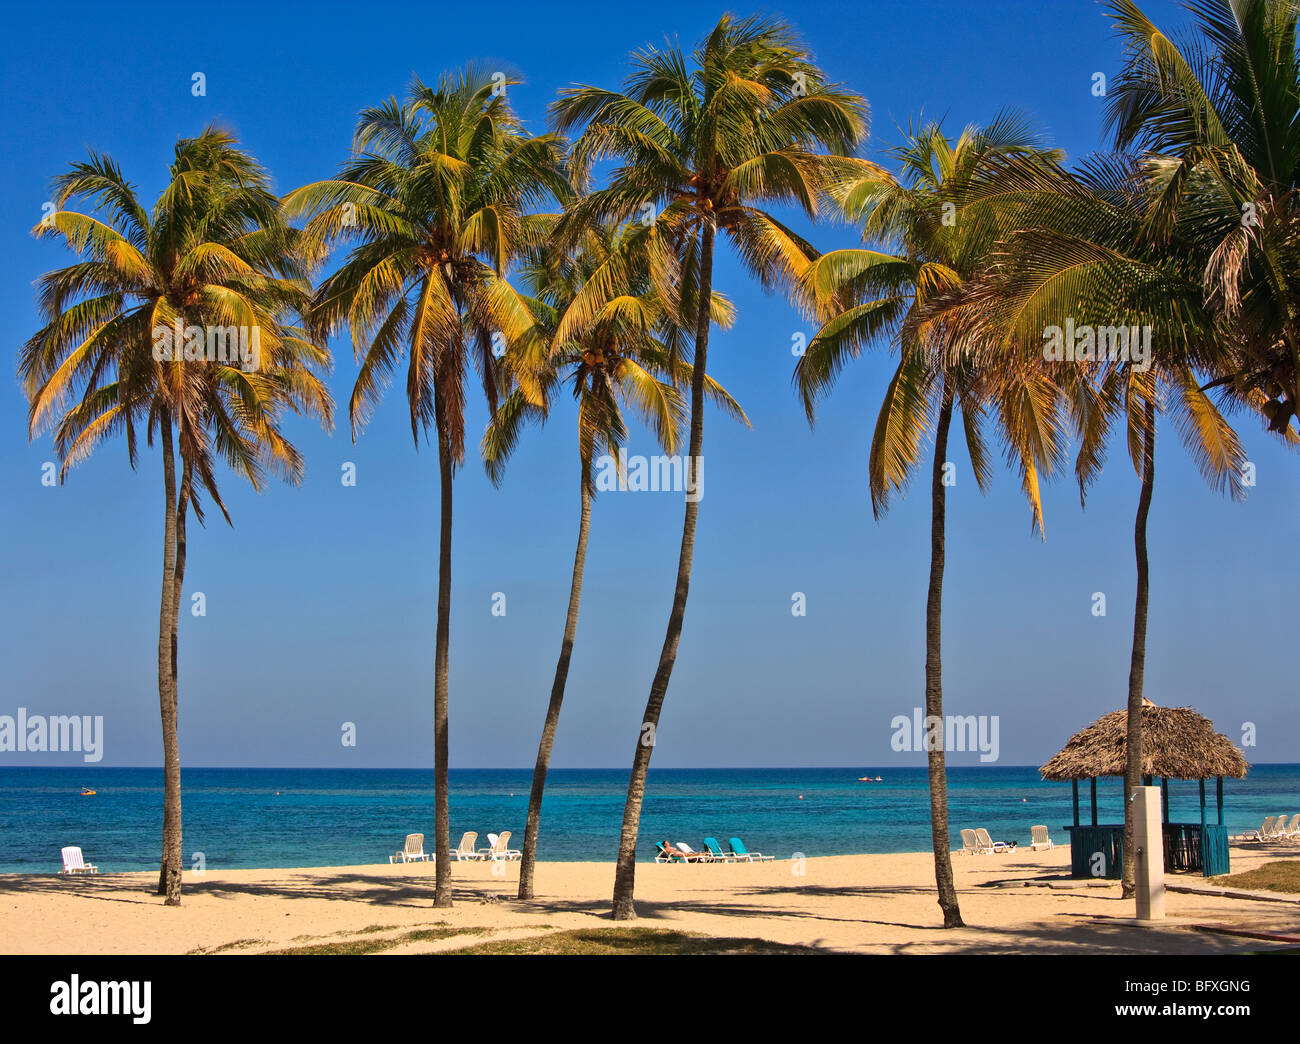 De hauts palmiers sur une plage Cubaine Banque D'Images